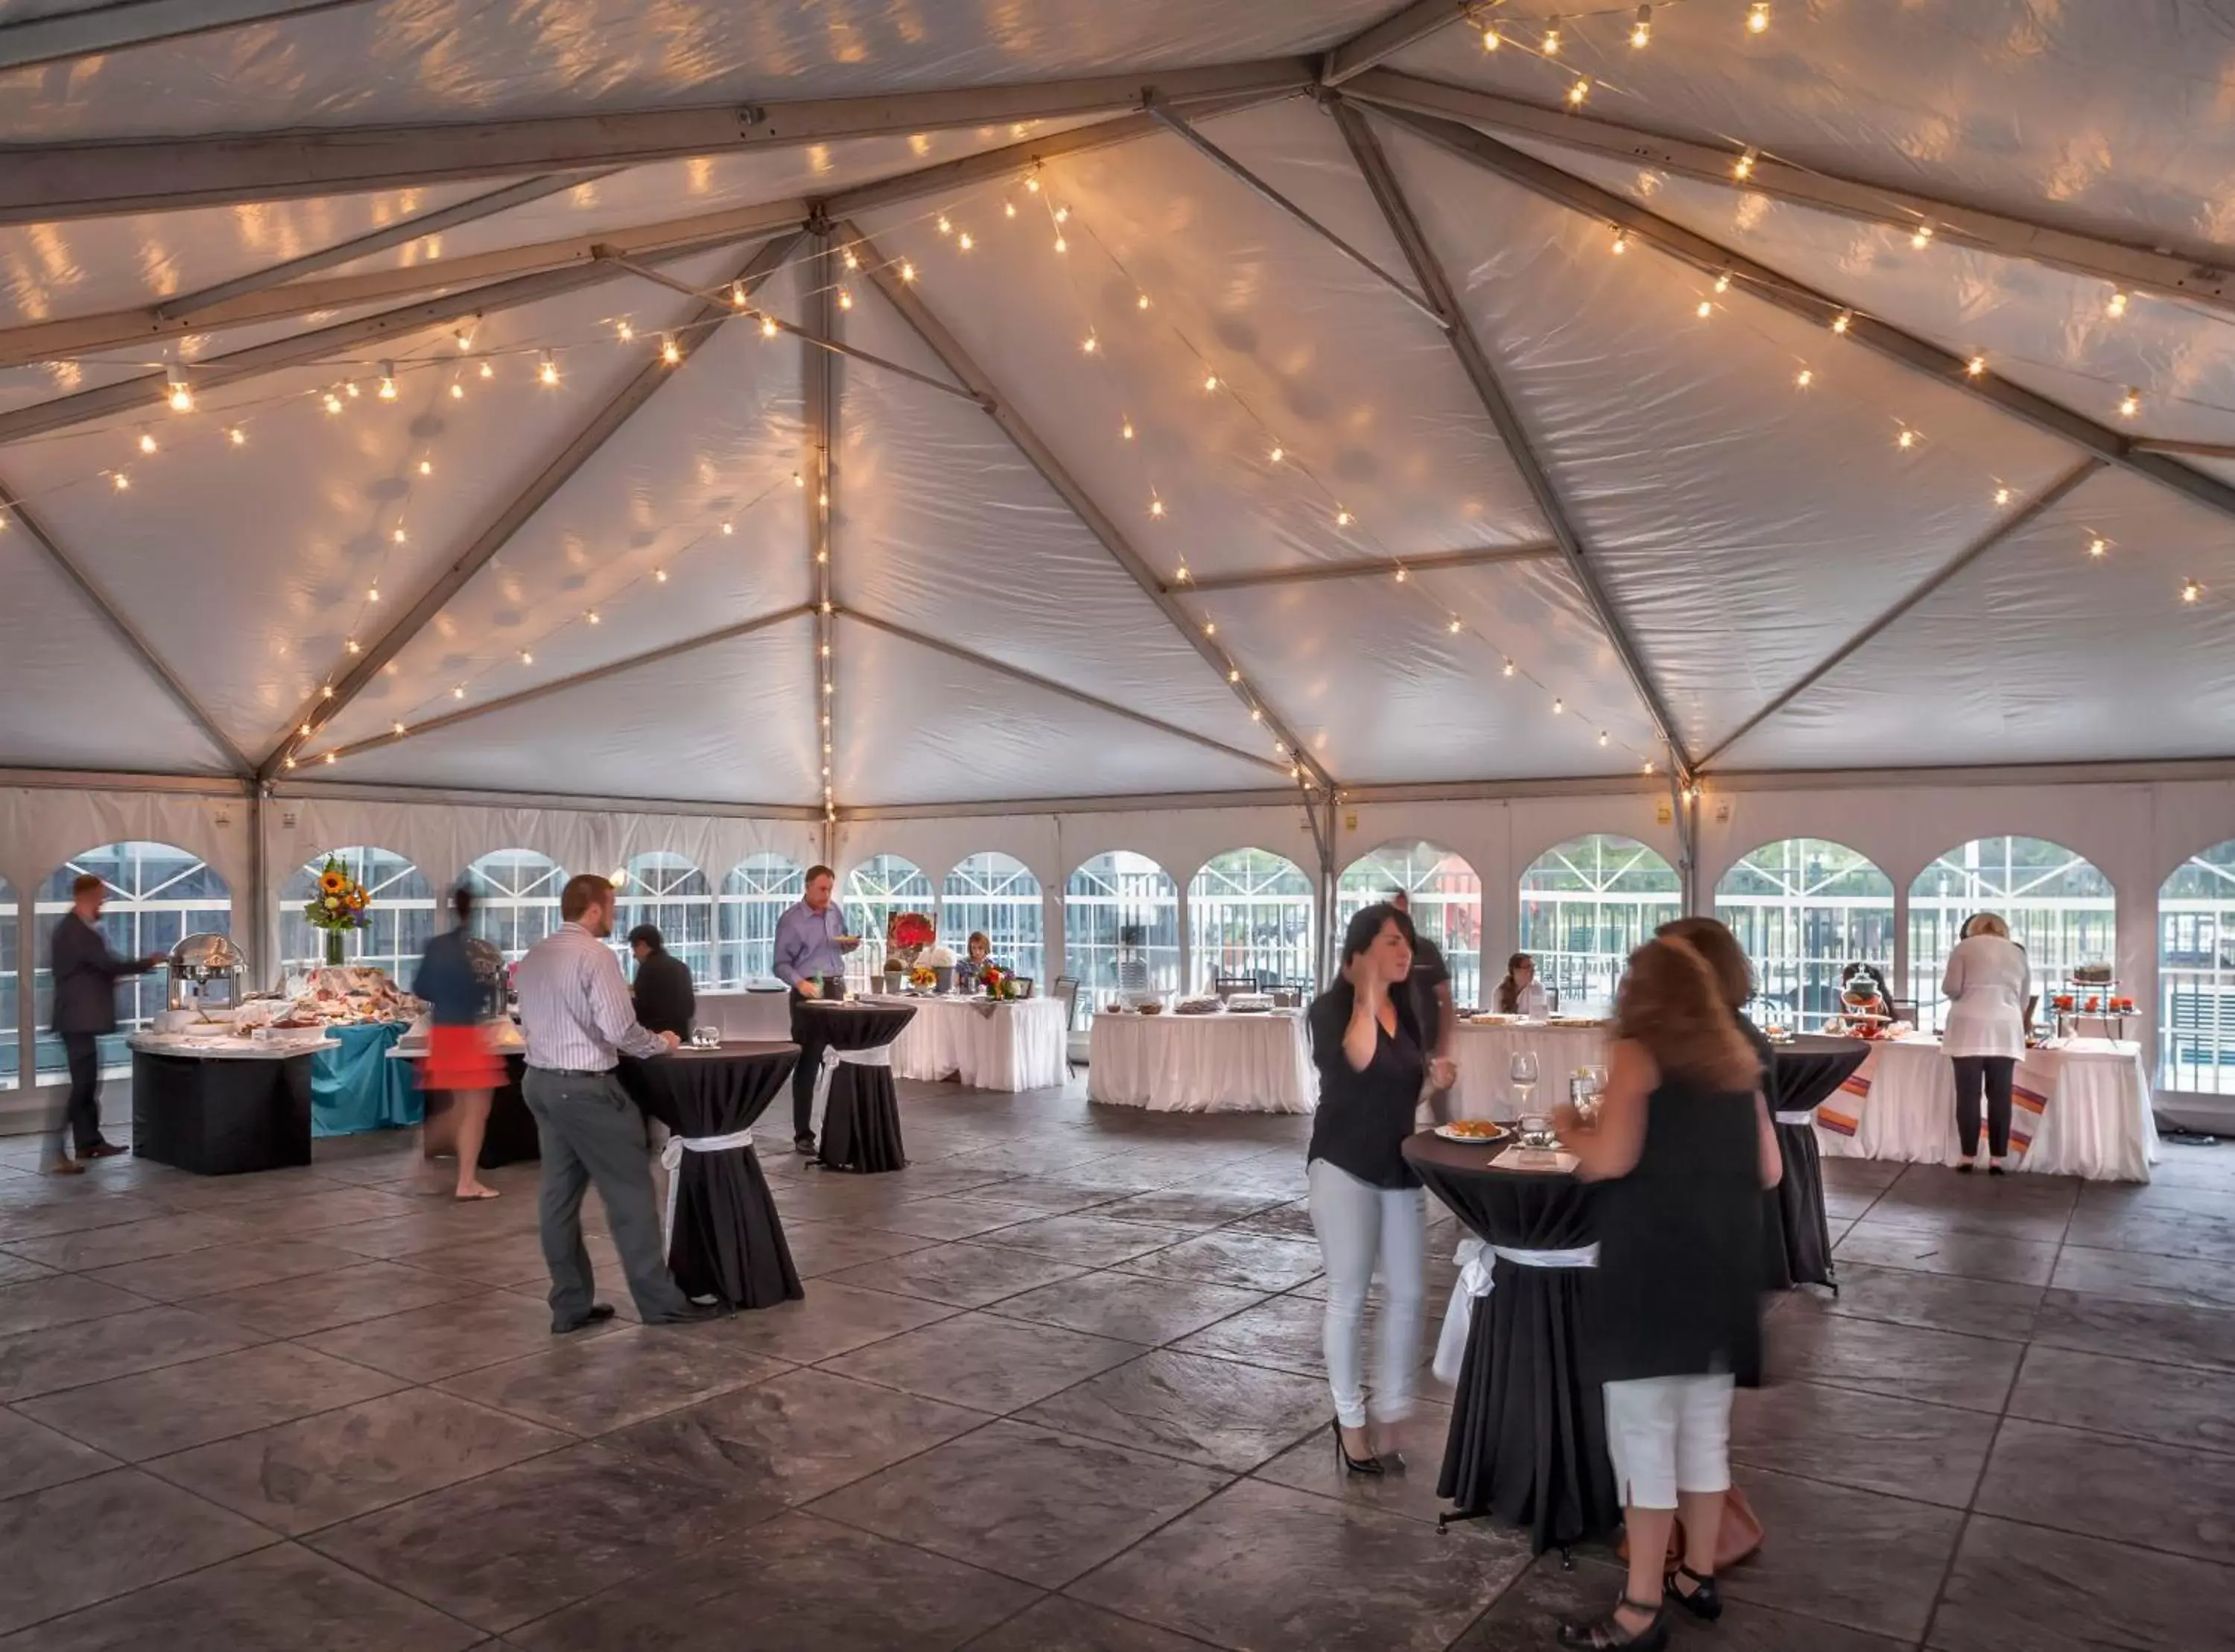 Business facilities, Banquet Facilities in Chicago Marriott Suites Deerfield